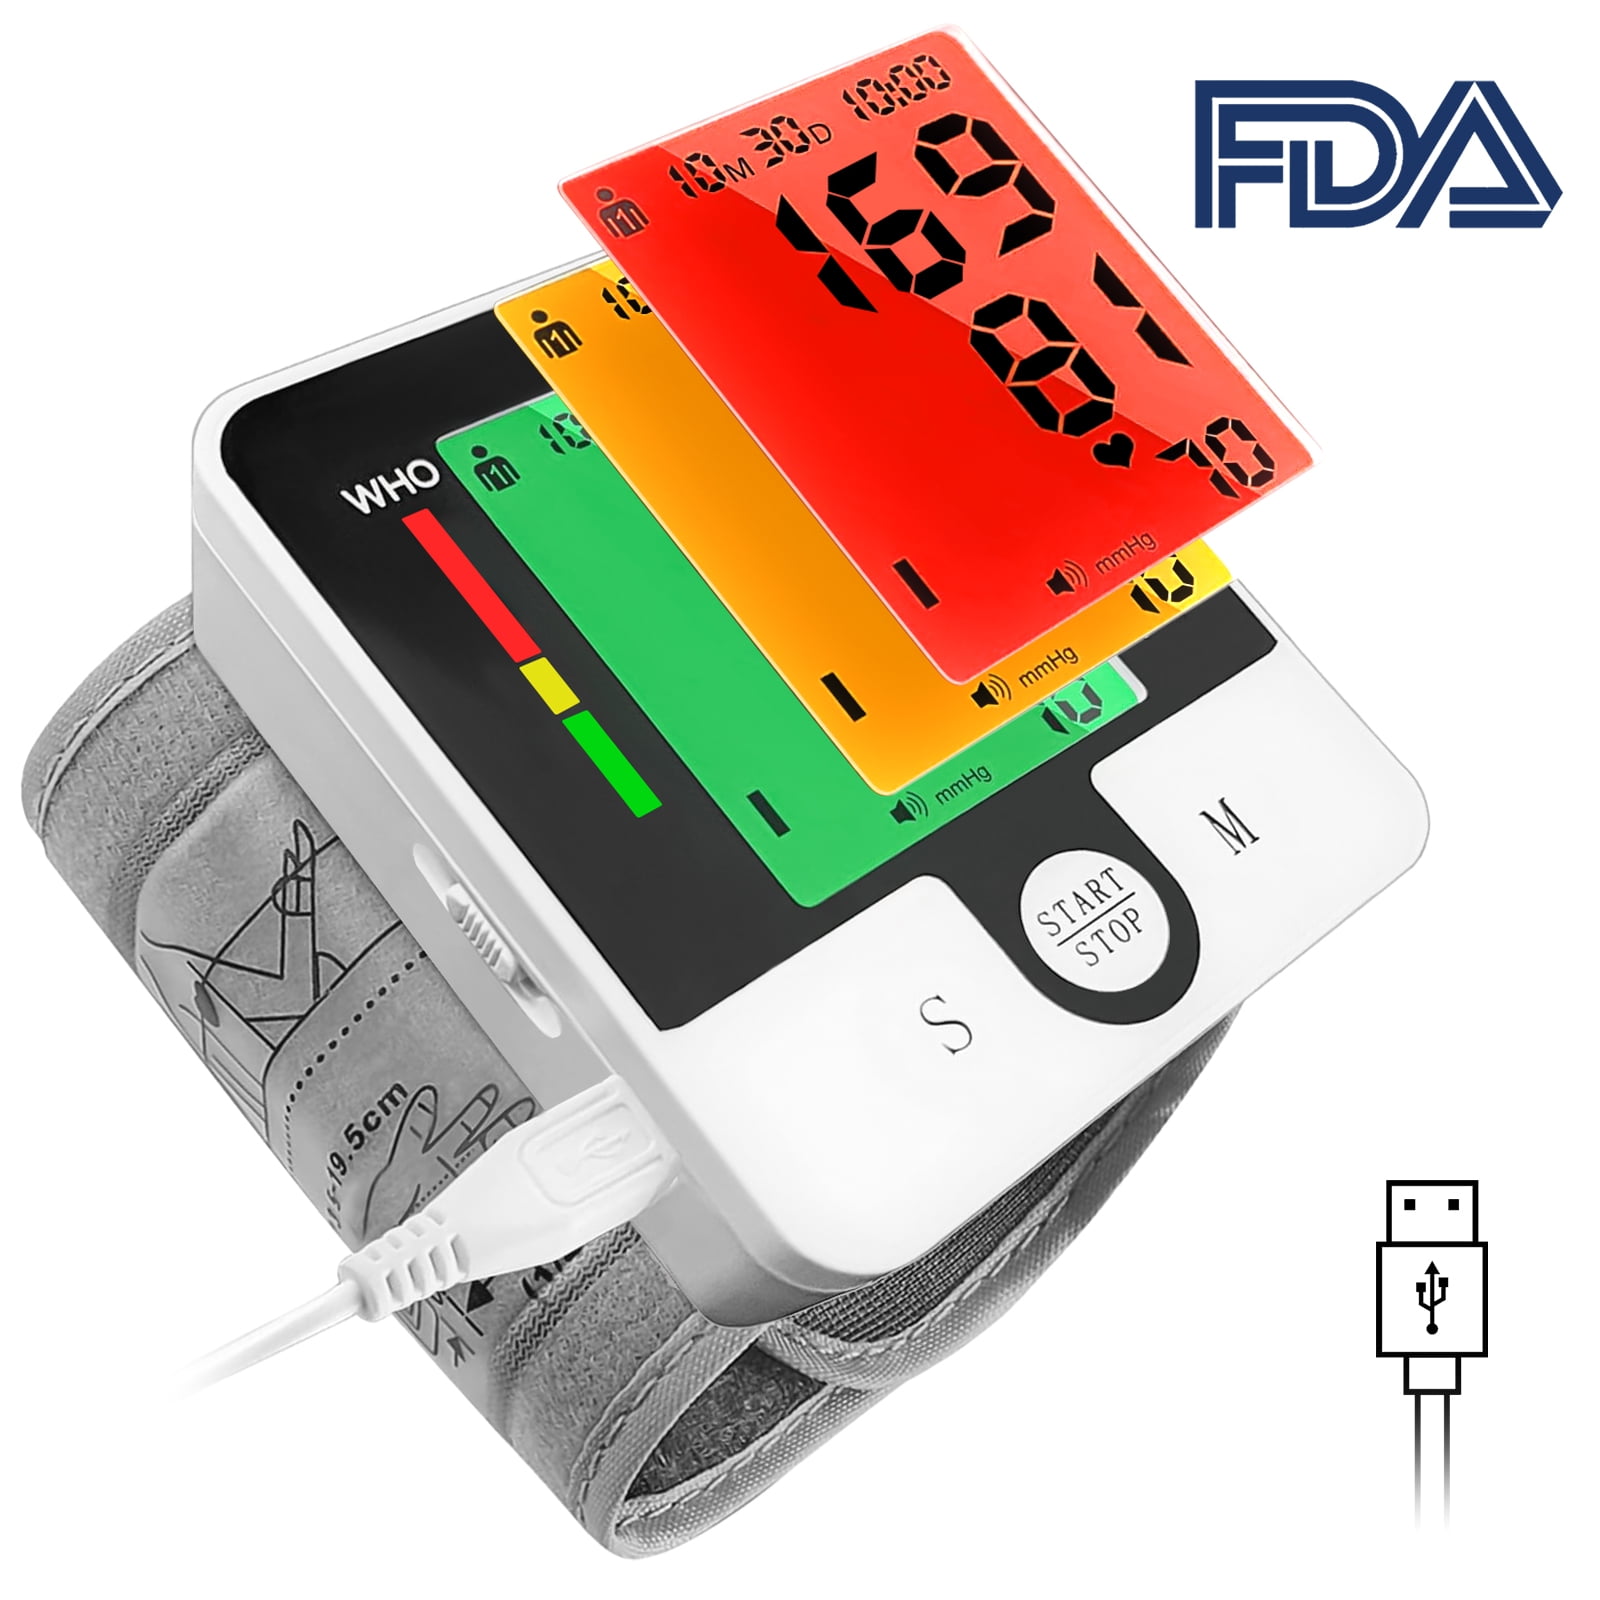 Lovia Intelligent Type Digital Blood Pressure Monitor w/ LCD Display NEW